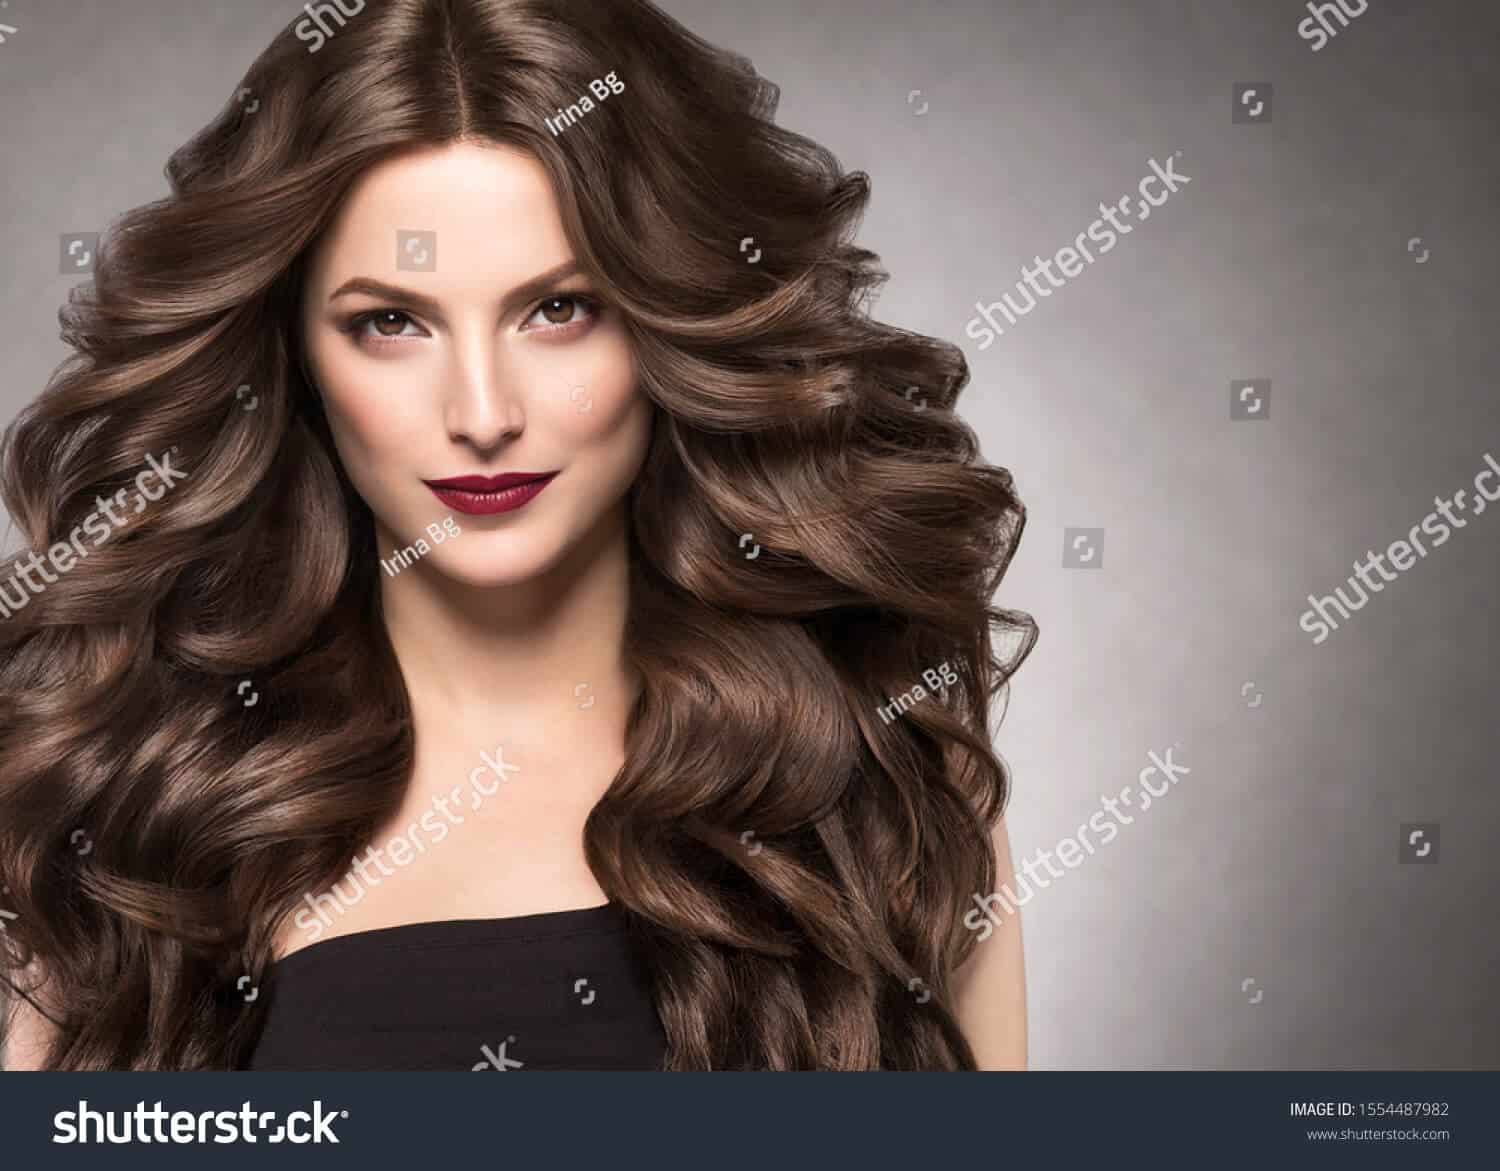 1 triệu 800 ngàn hình ảnh cô gái tóc dài chất lượng cao trên Shutterstock